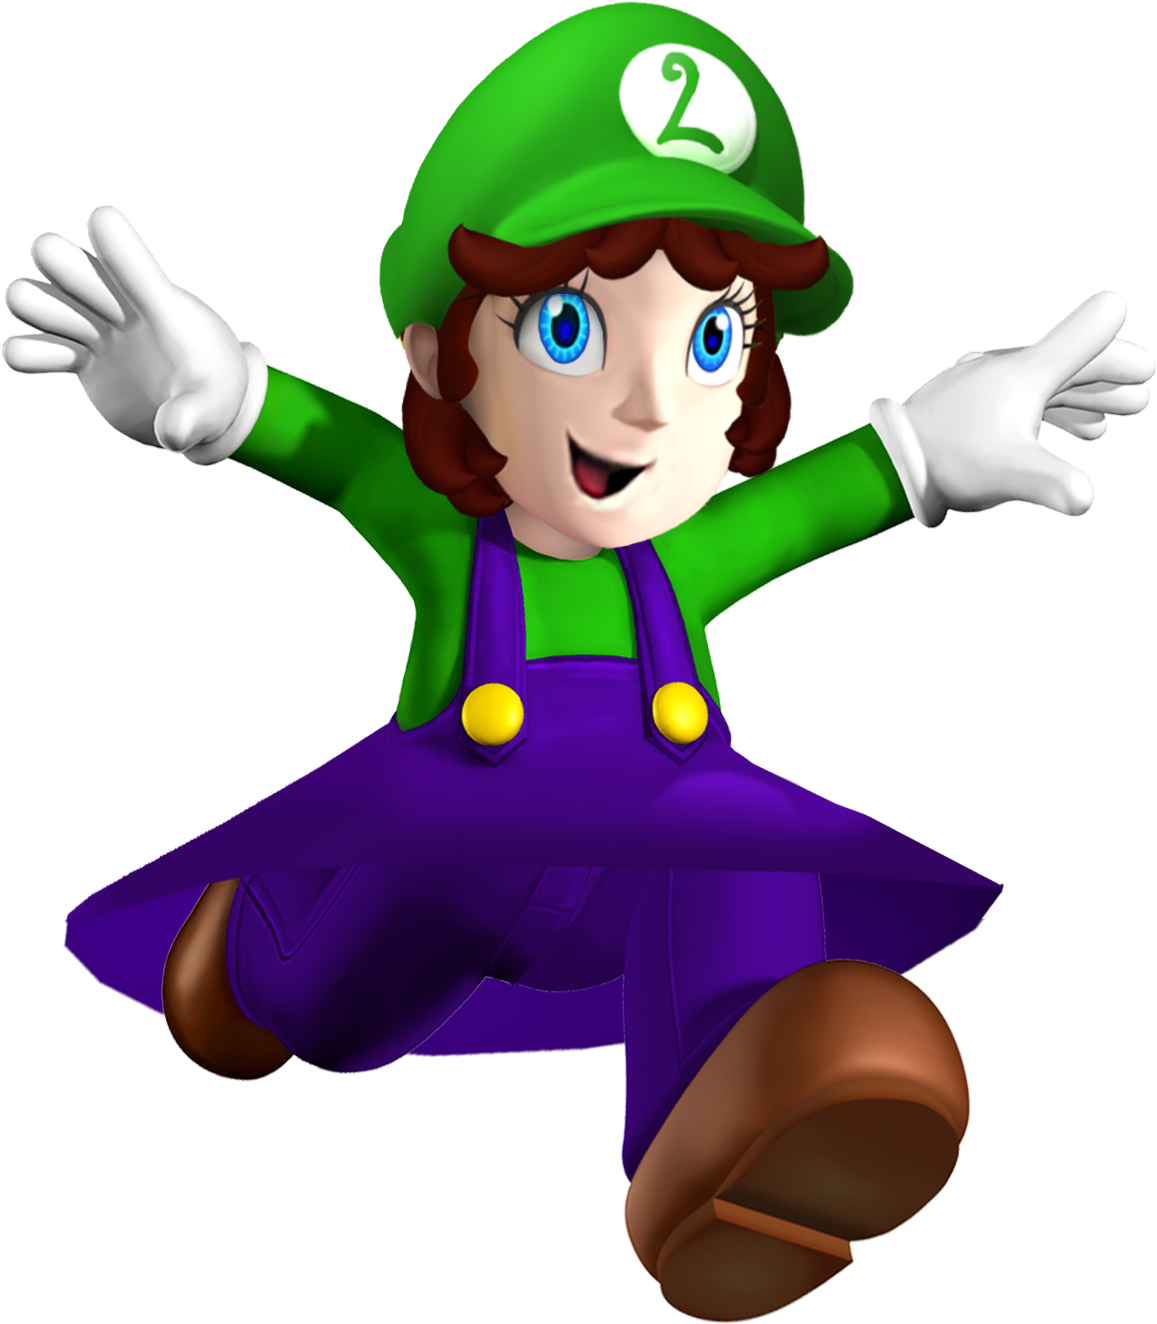 Super Mario Series Fantendo The Nintendo Fanon Wiki - Luigi Mario (1356x1523)